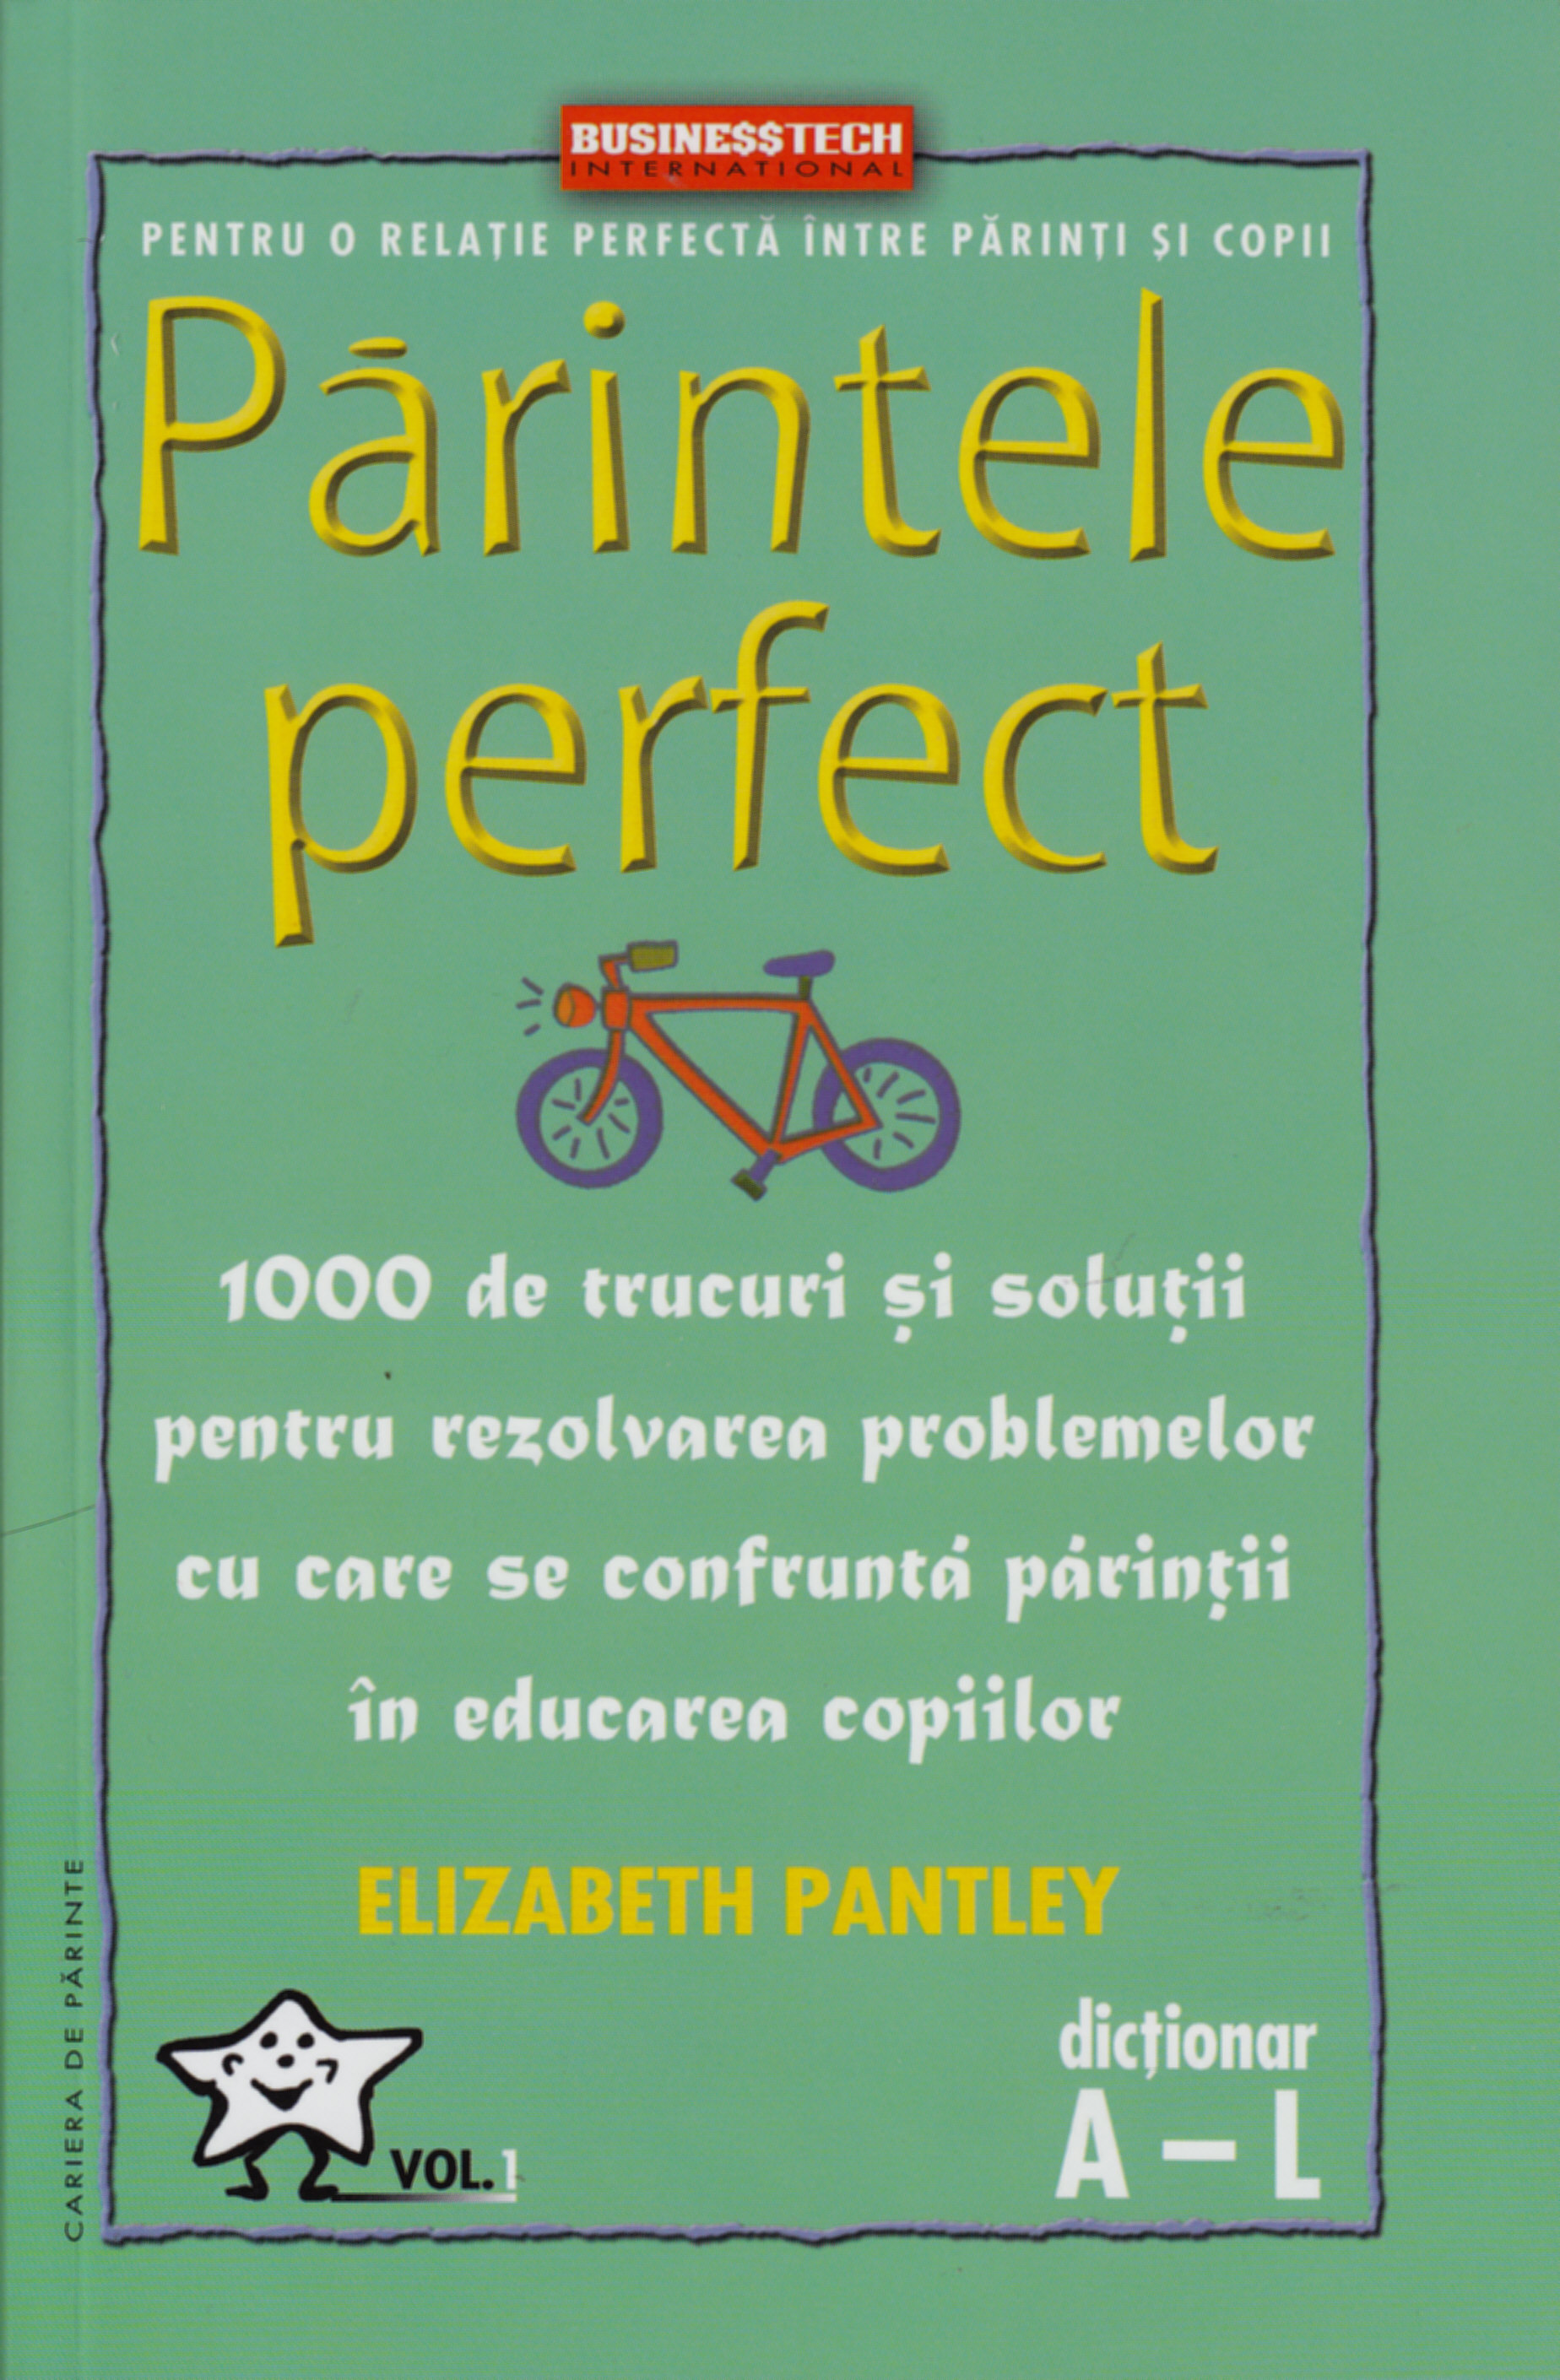 Parintele Perfect Vol. 1 - Dictionar A-L - Elizabeth Pantley